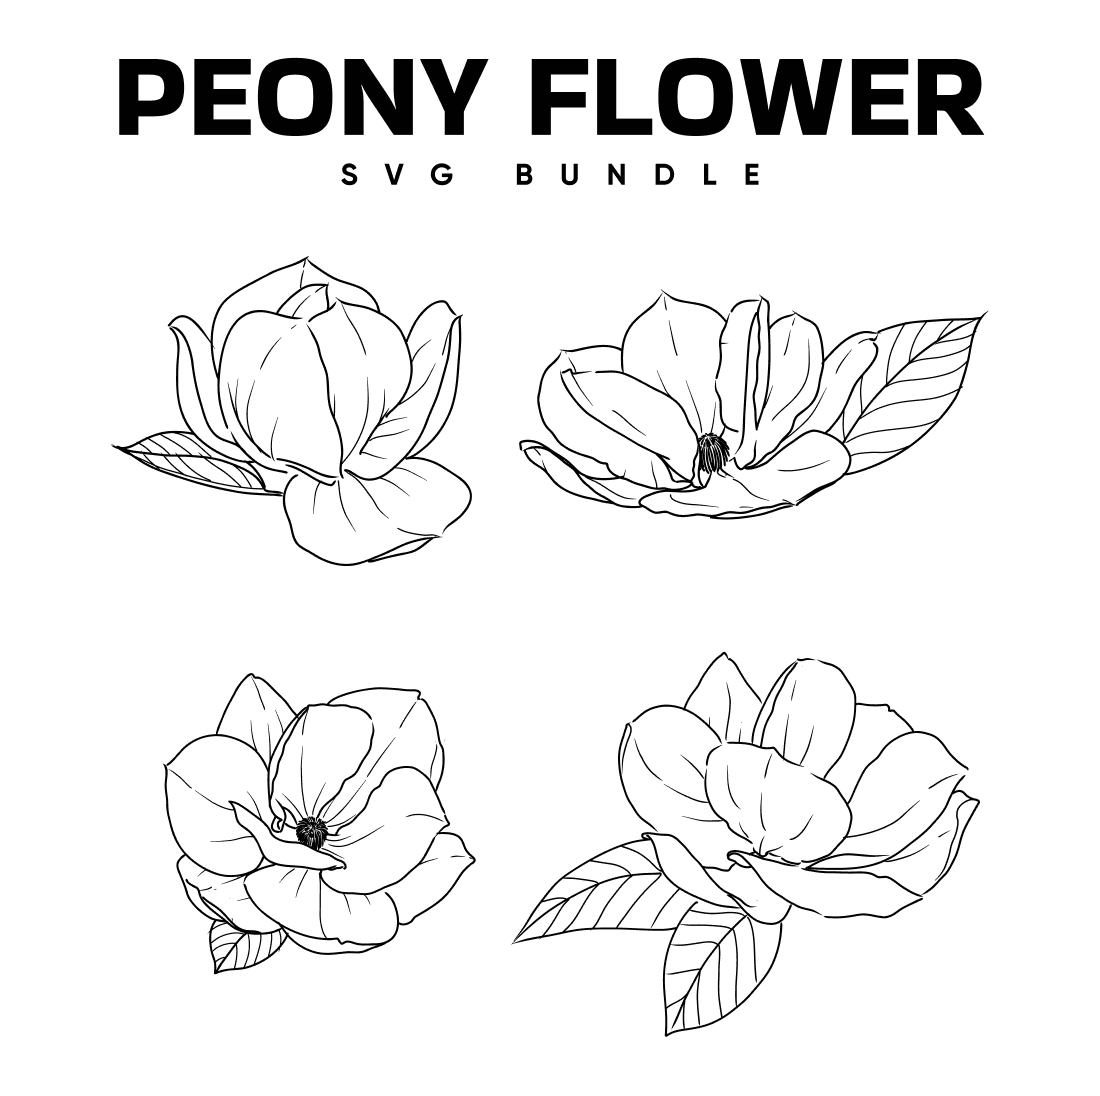 Peony Flower SVG.